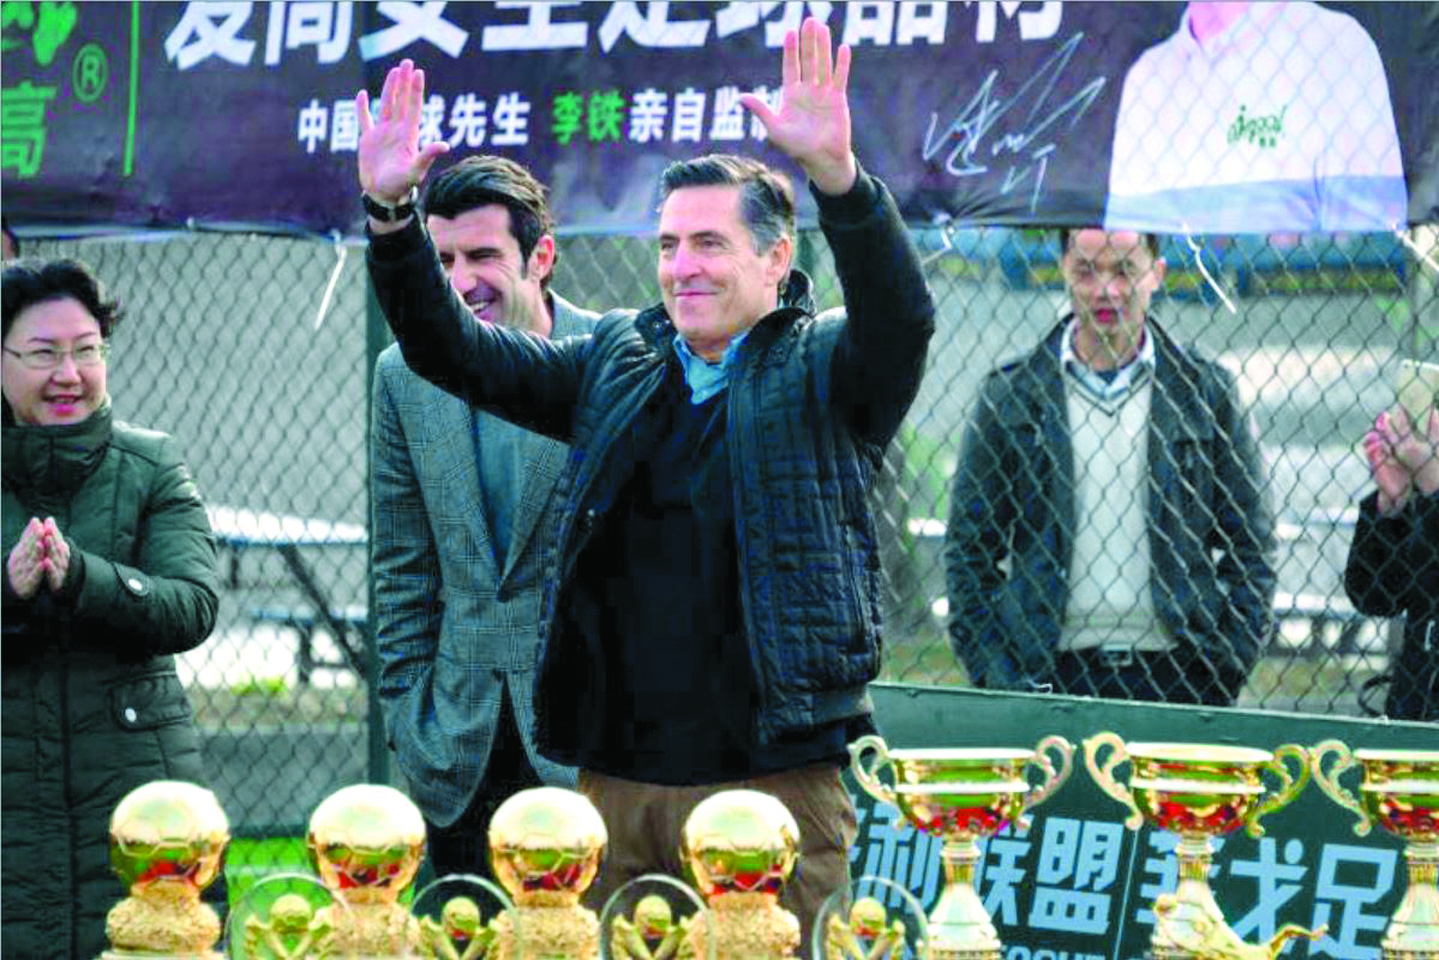 Diretor da Academia Figo na China. “De 0 a 10, futebol chinês recebe um 5”